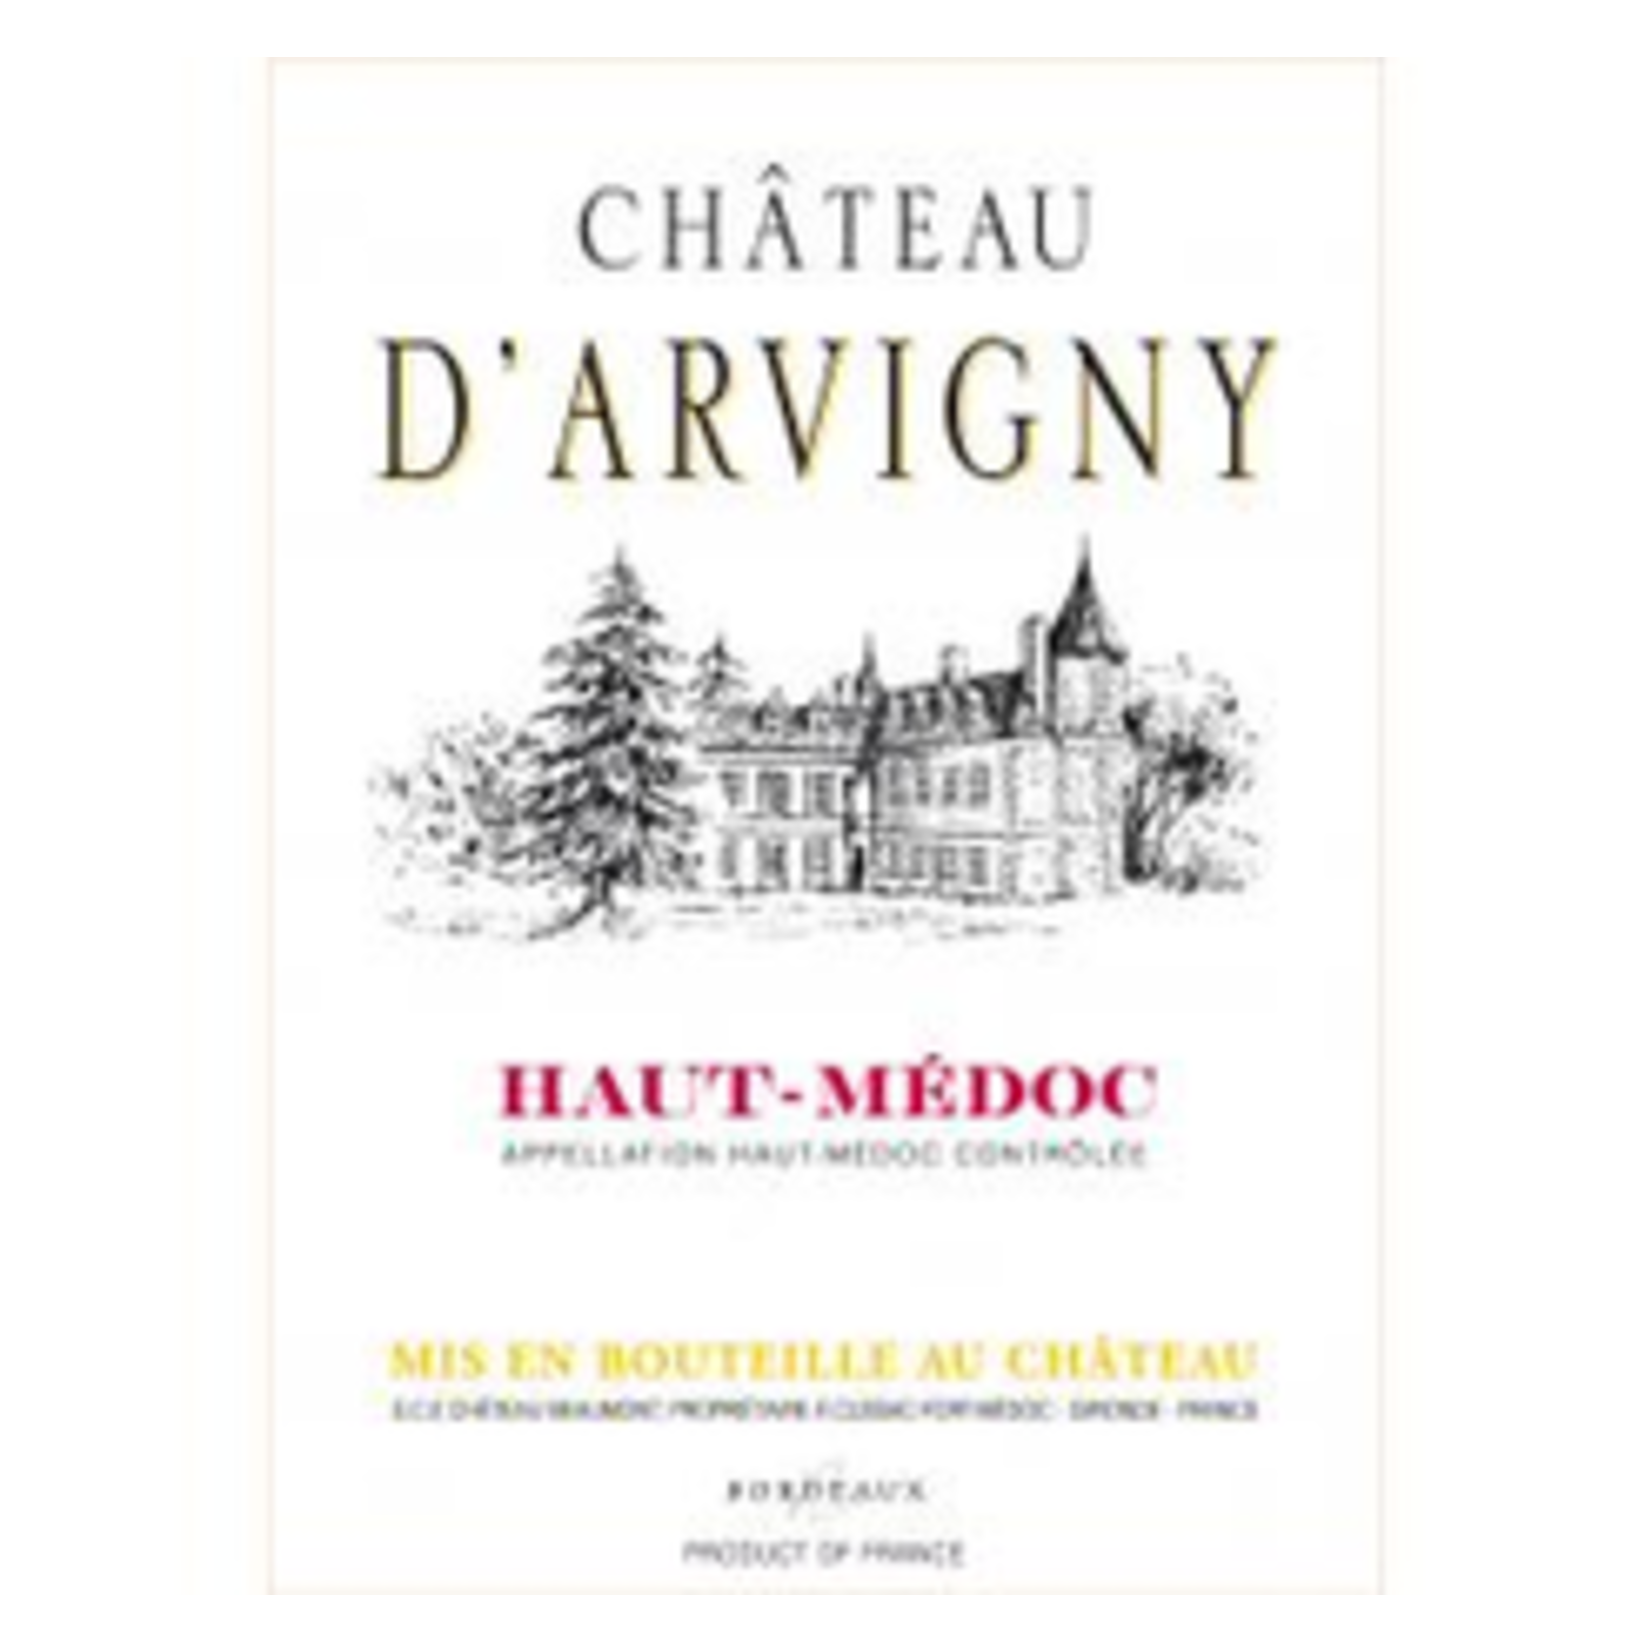 Wine Chateau d'Arvigny Haut-Médoc Cru Bourgeois 2018